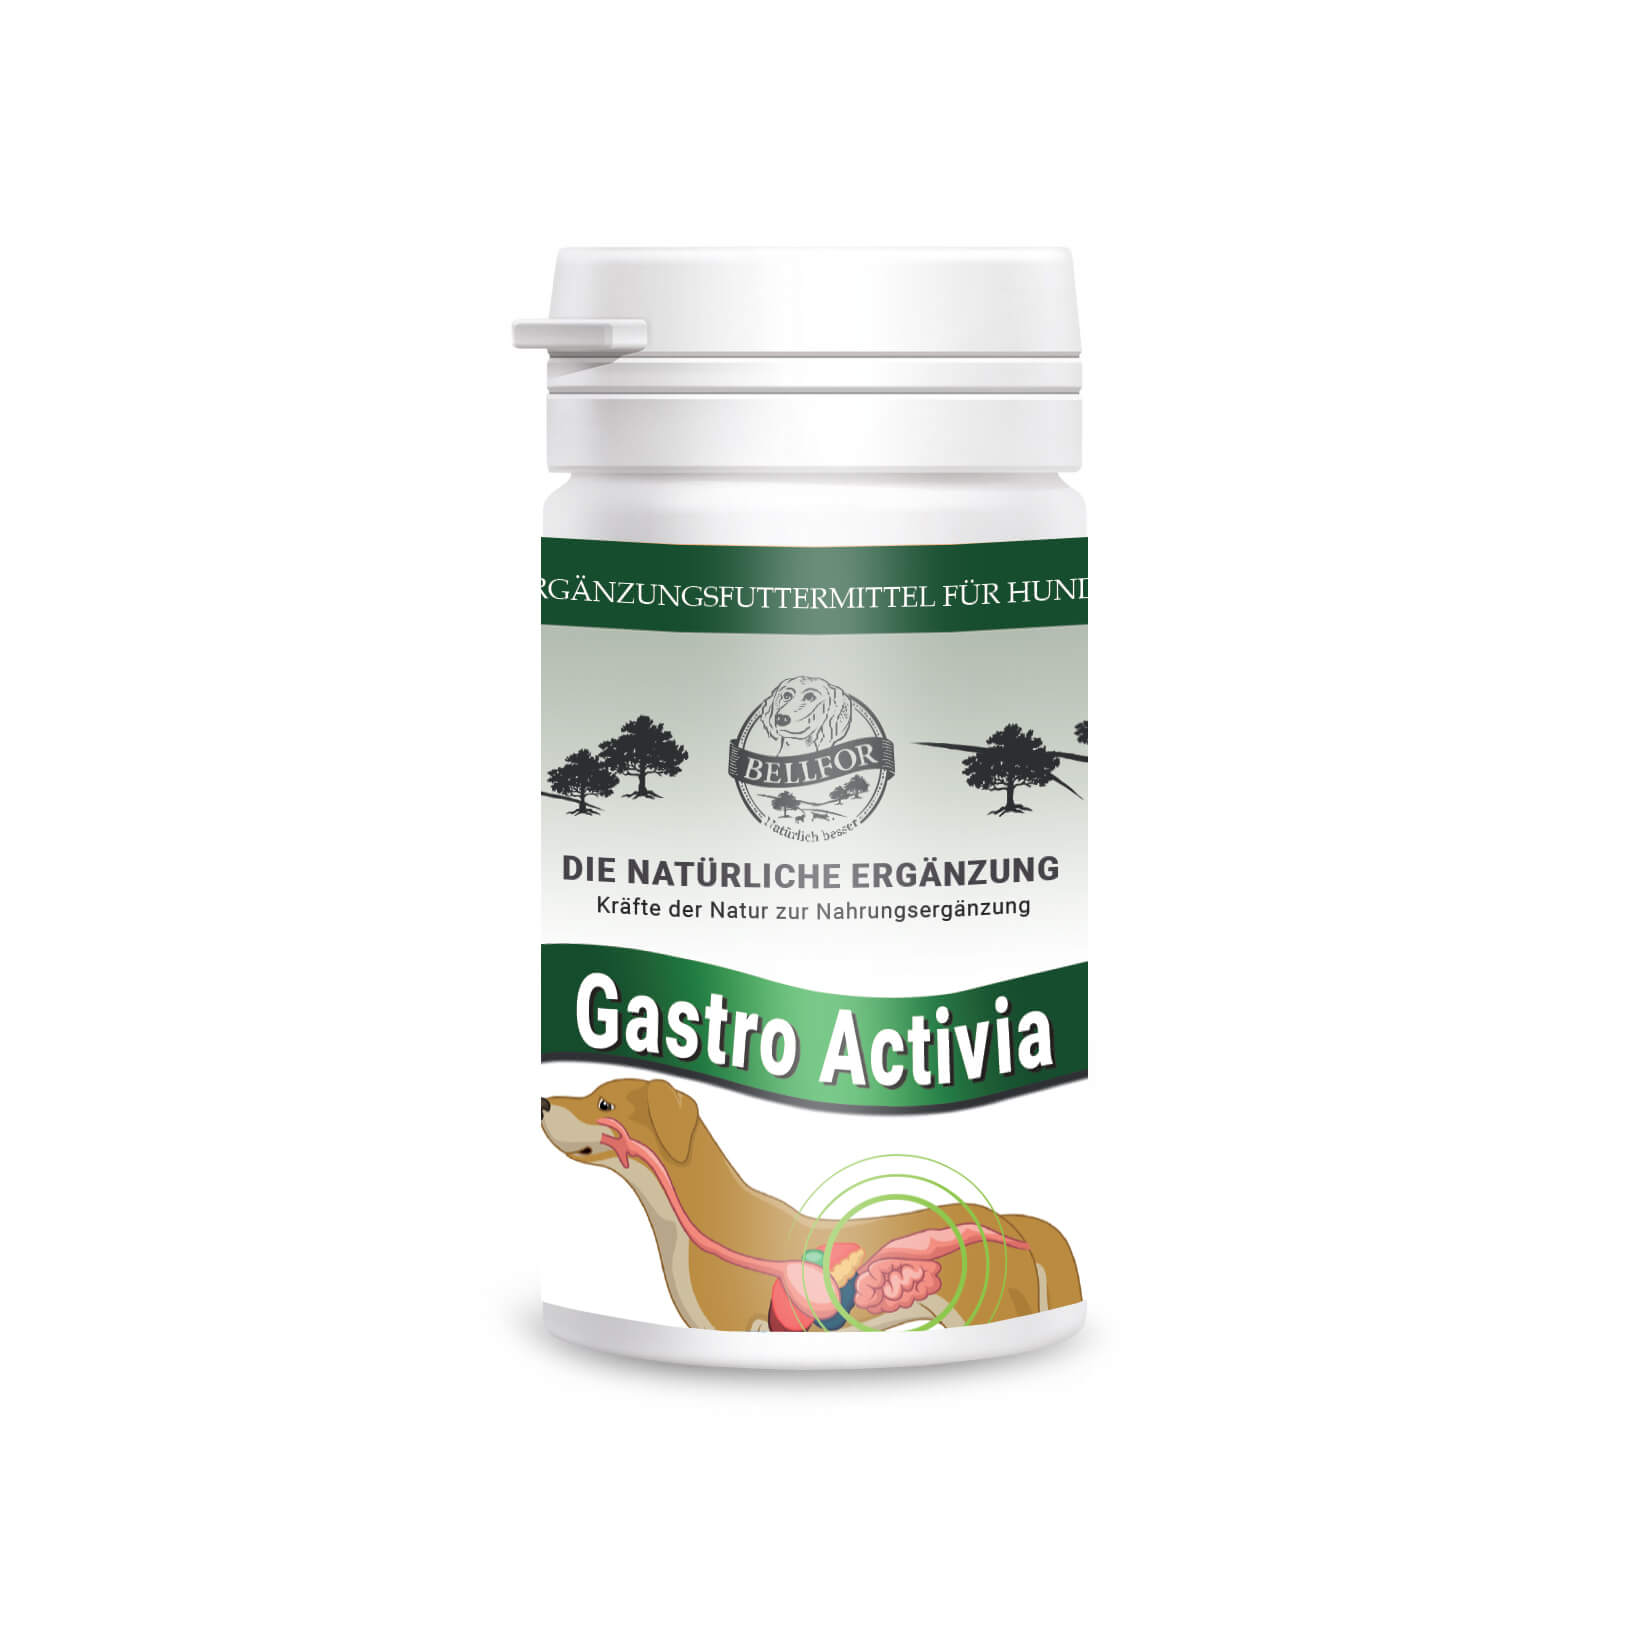 Gastro activia - poudre - 80g